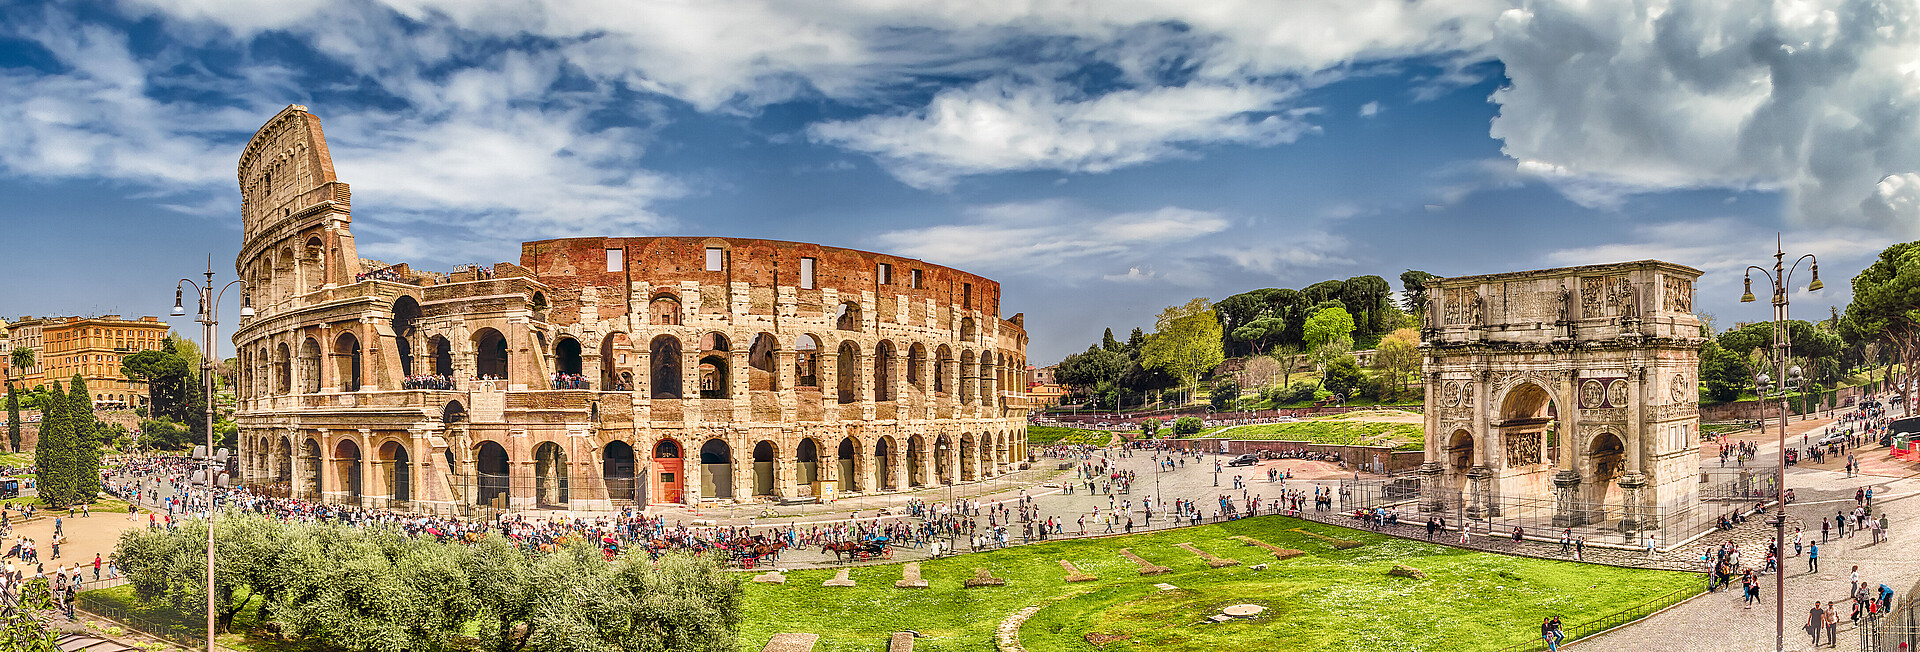 Panoramaansicht Kolosseum und Konstantinsbogen in Rom